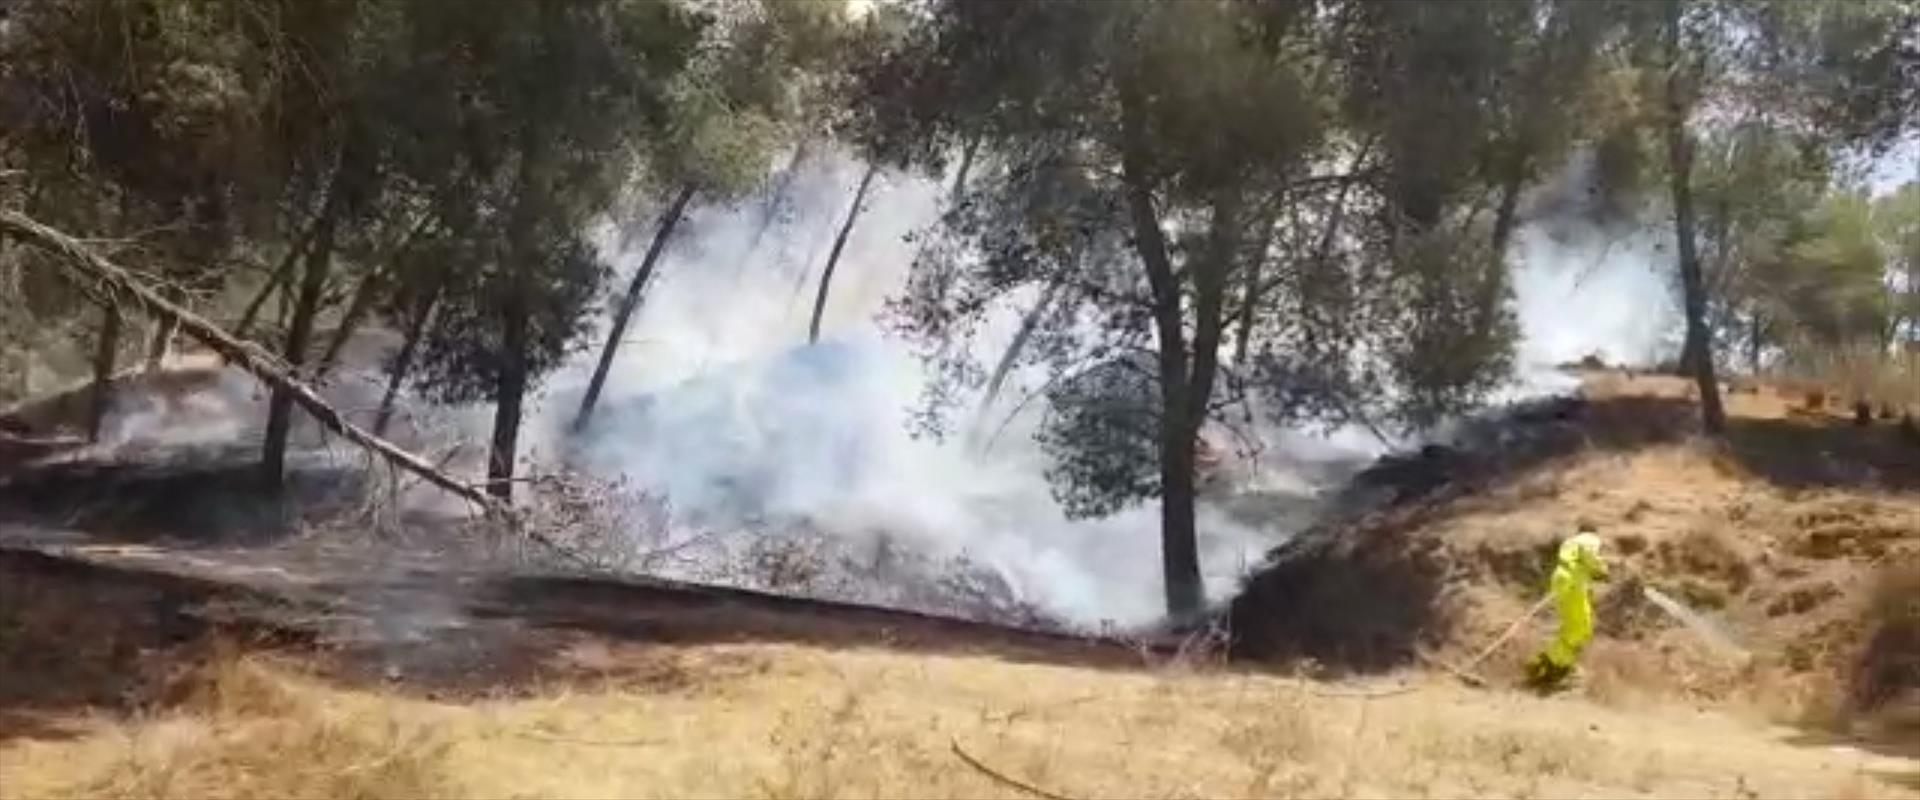 שריפה ביער בארי מבלון תבערה